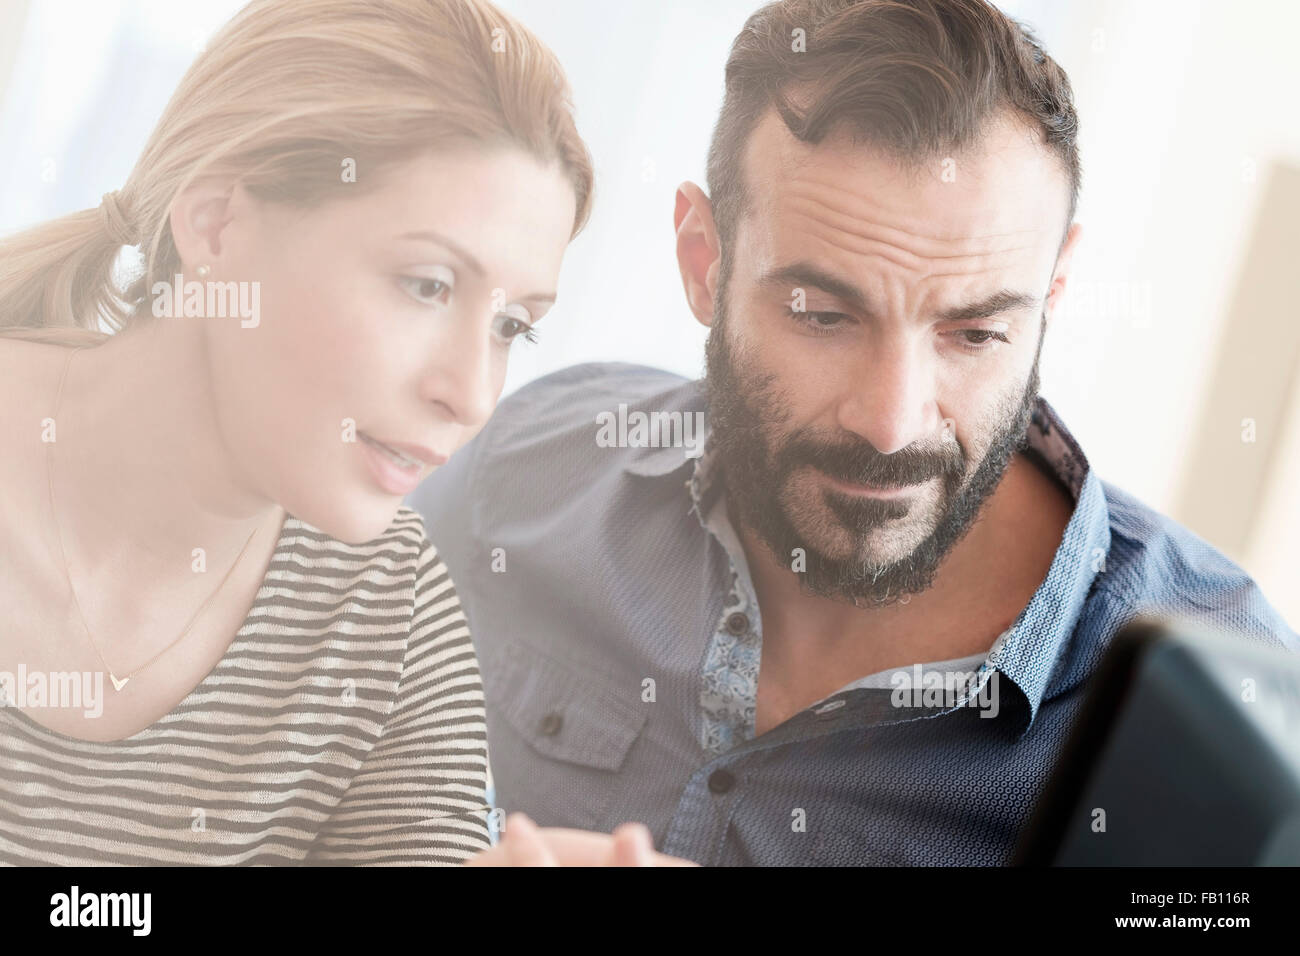 Man and woman looking at computer Stock Photo